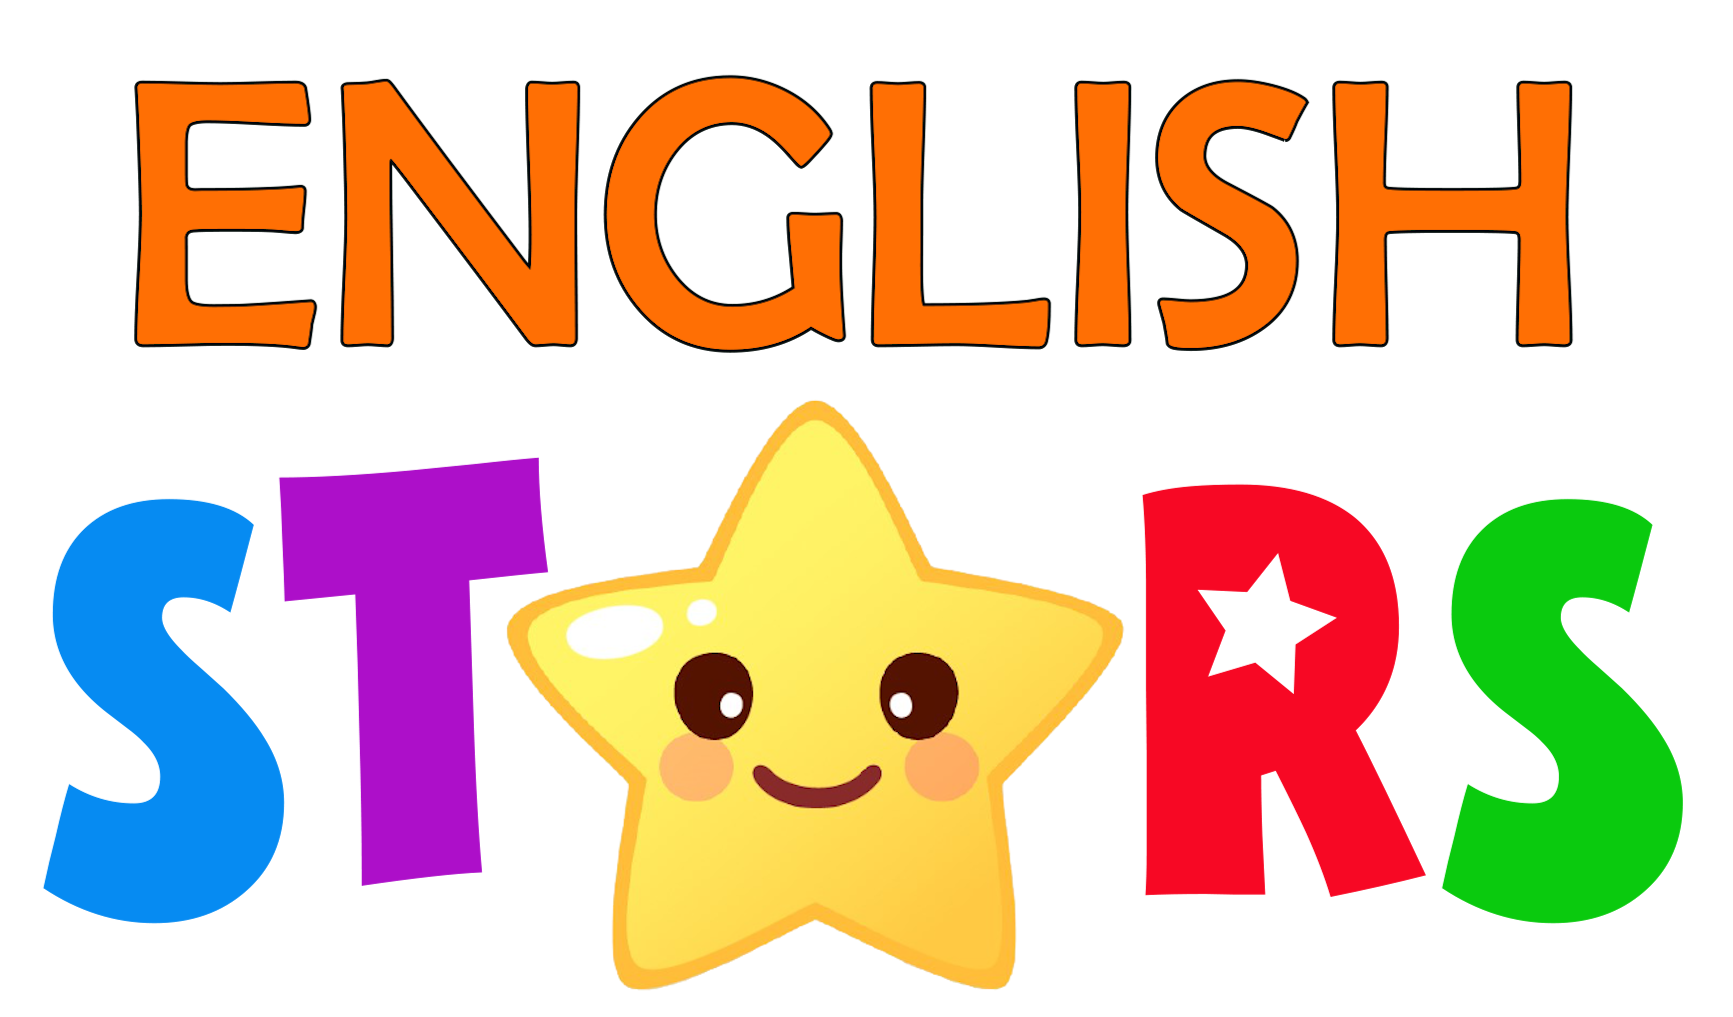 Как переводится с английского star. Звезда на английском языке. Английский эмблема. Что такое Star по английскому. Английский язык логотип.